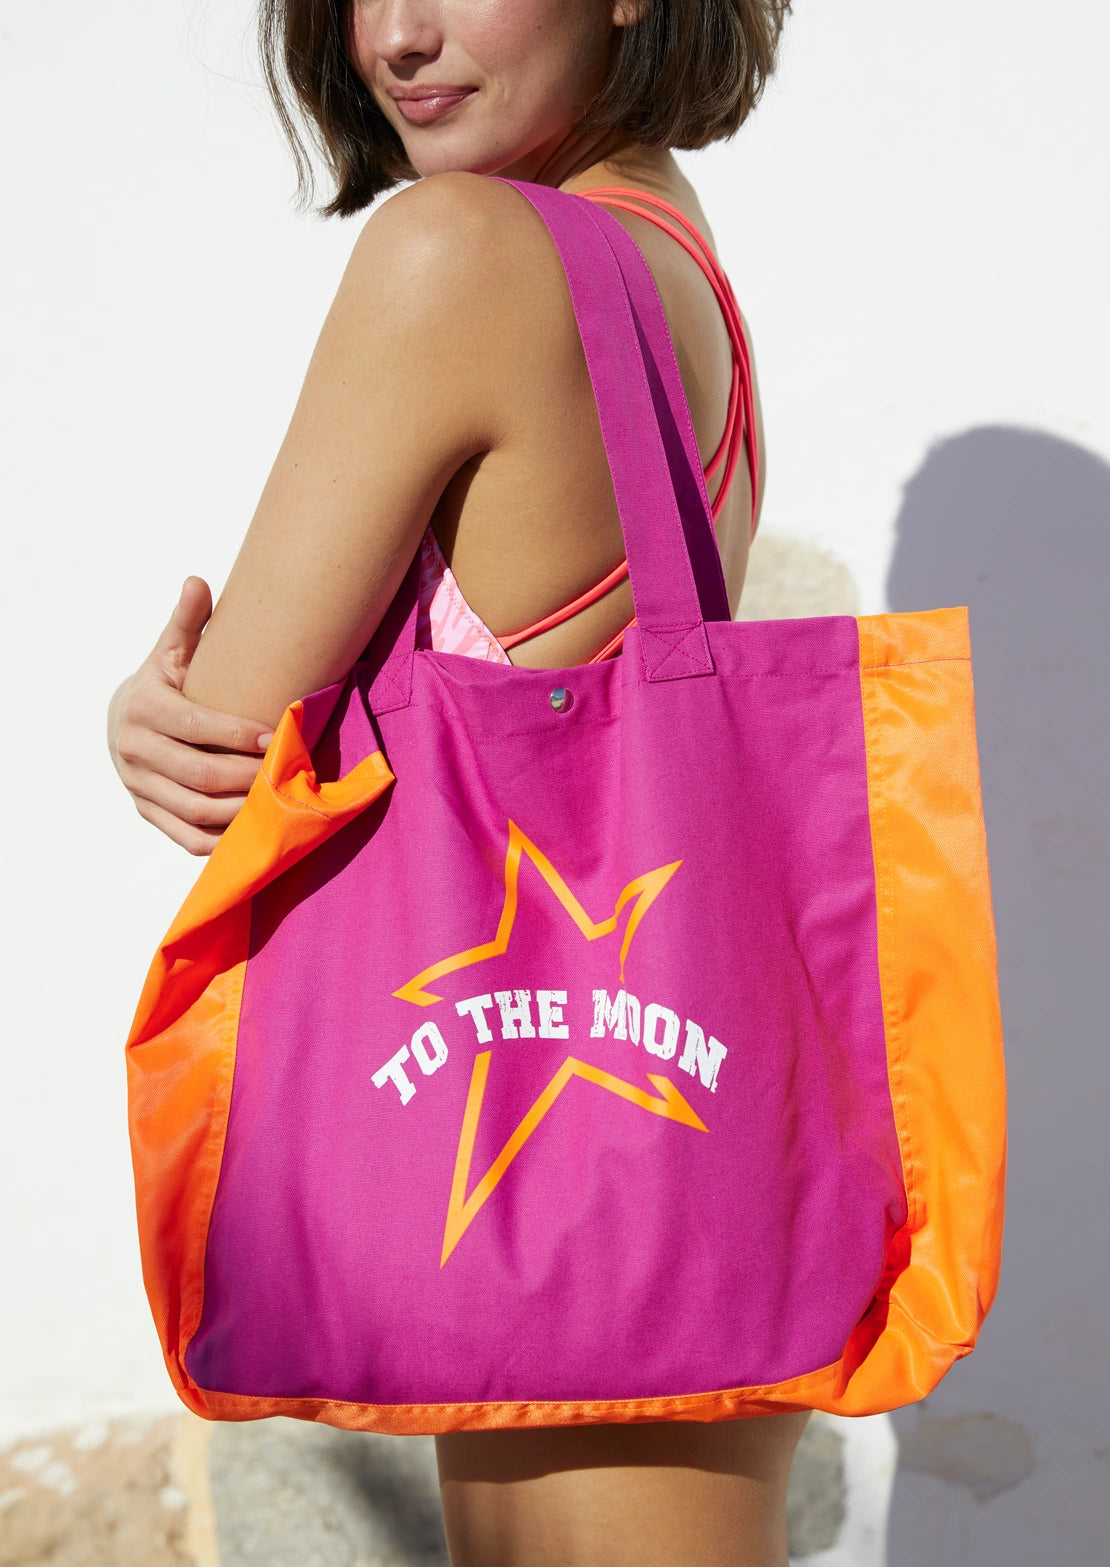 Comprar bolsa porta-todo de To the Moon, para la playa o para lo que tú quieras. Bolsa en color fucsia y naranja flúor con marca To the Moon.